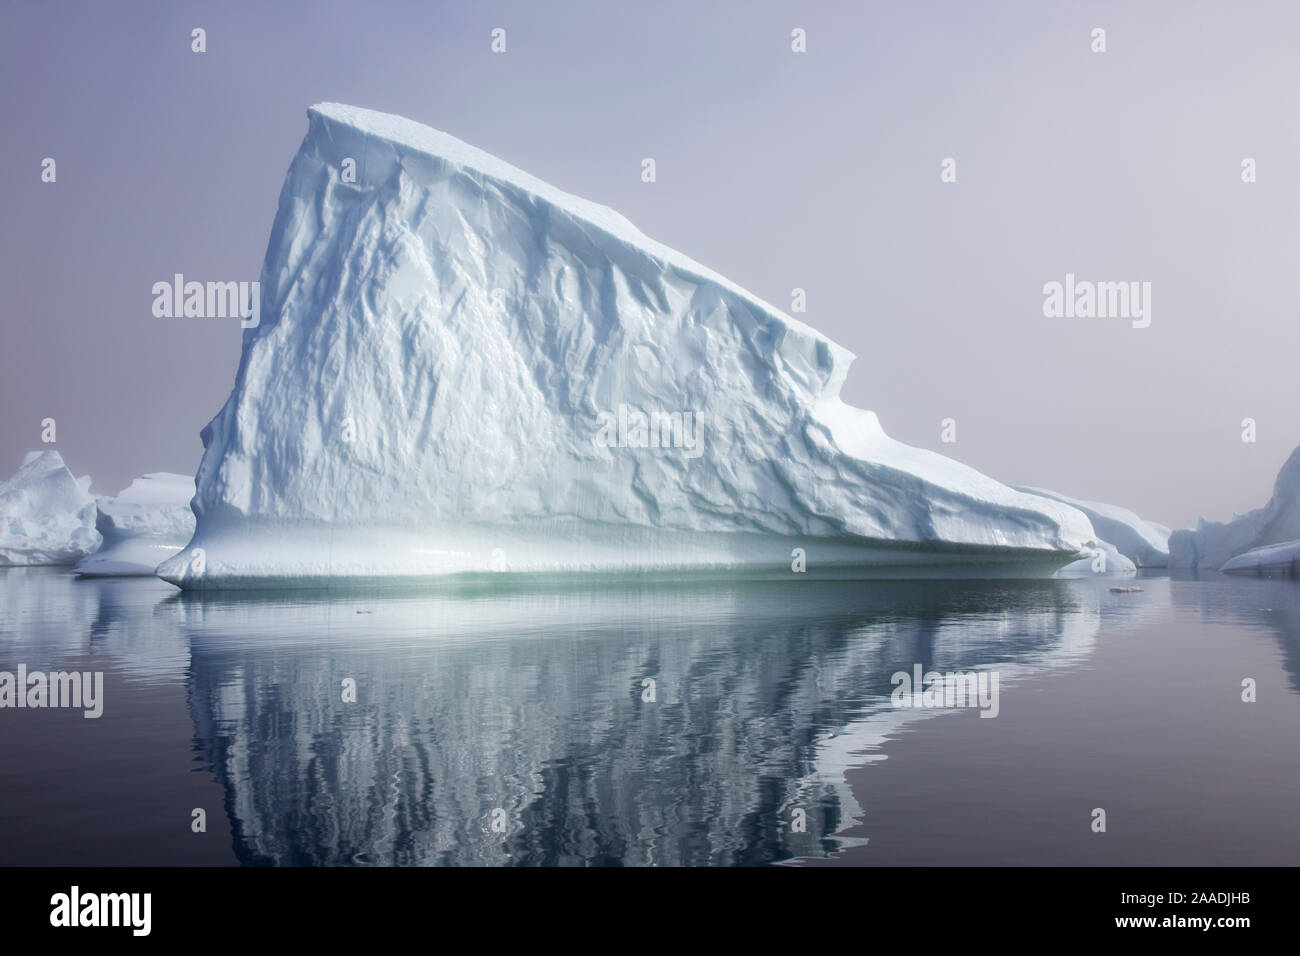 Eisberg im Meer außerhalb der Ilulissat-eisfjord UNESCO Weltkulturerbe, Grönland, August 2014. Für die Süßwasser-Projekt fotografiert. Stockfoto